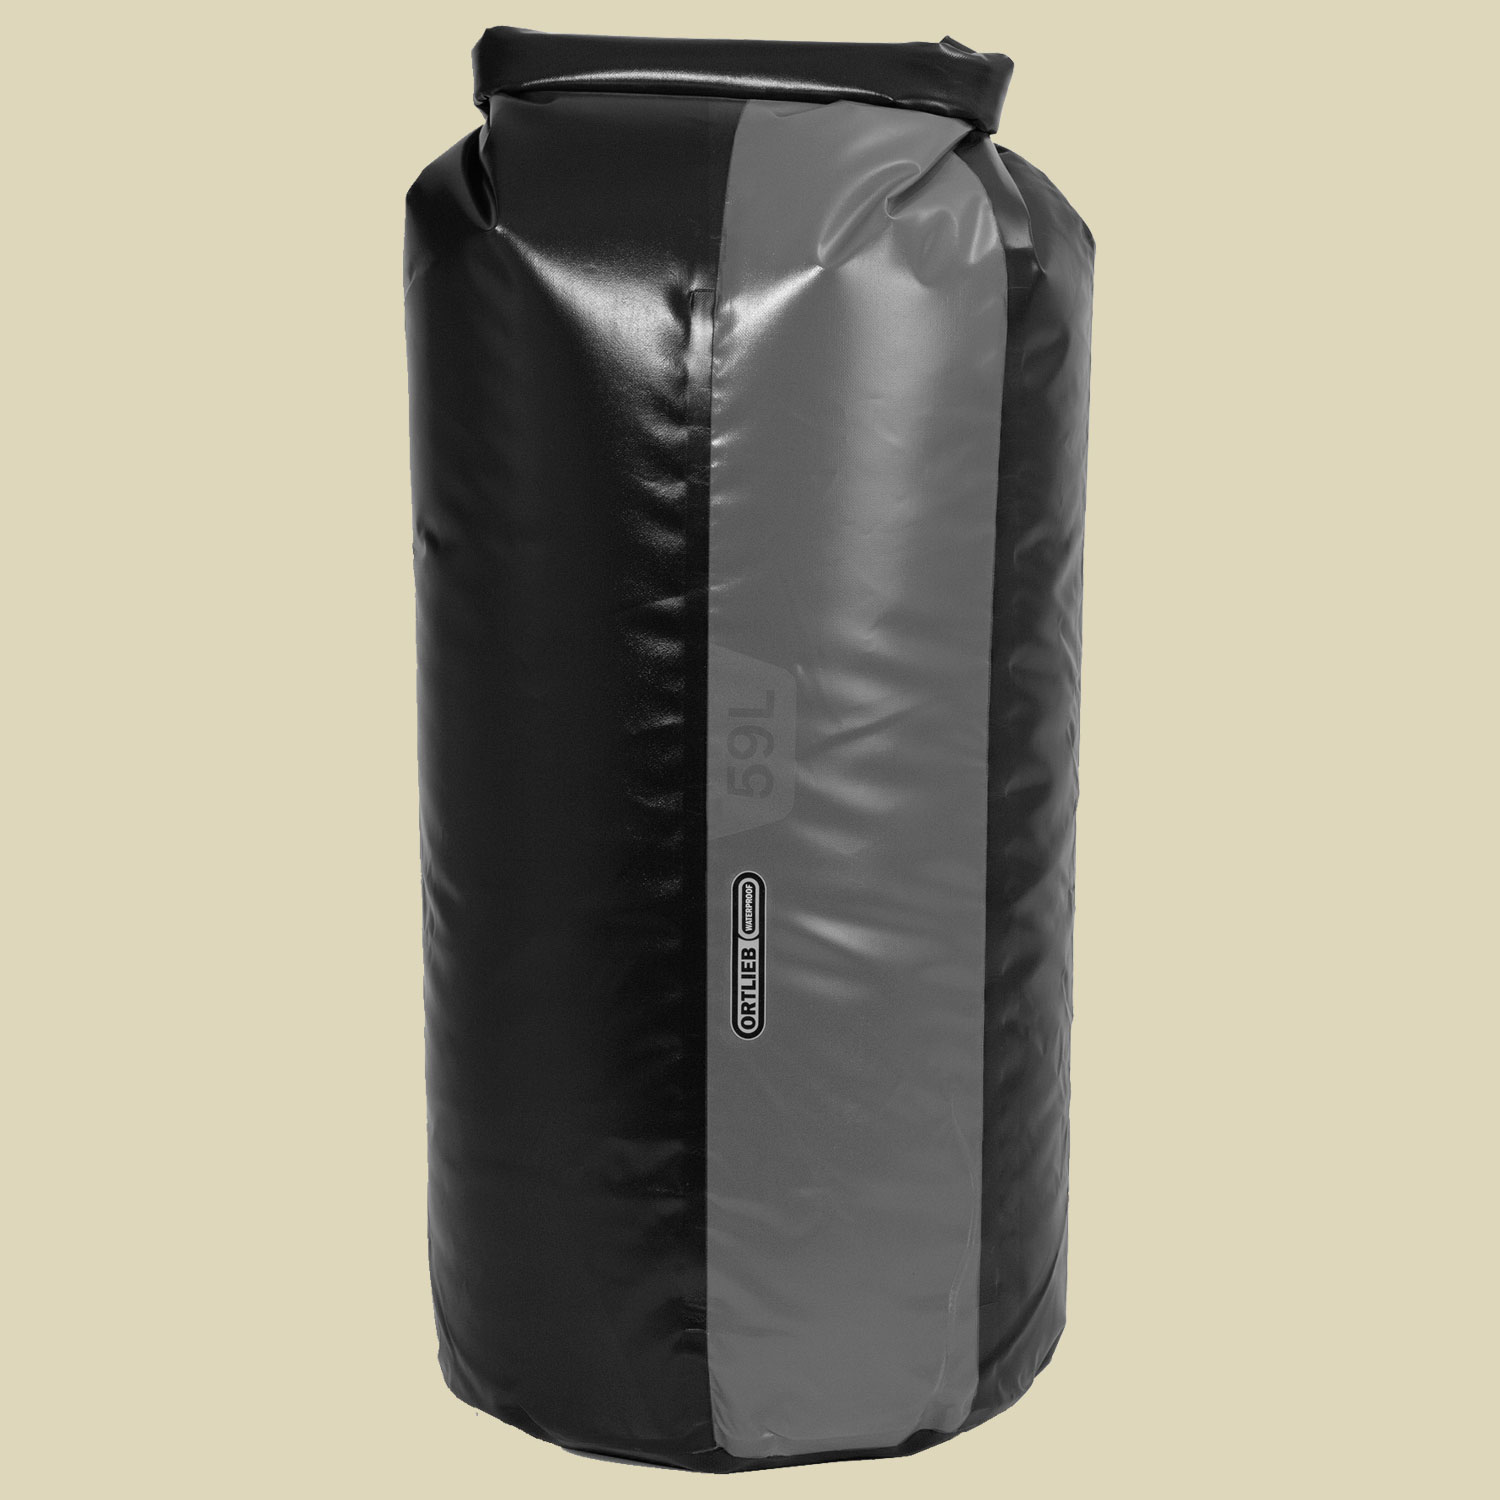 Dry-Bag PD 350 Volumen in Liter 35 Farbe schwarz-schiefer